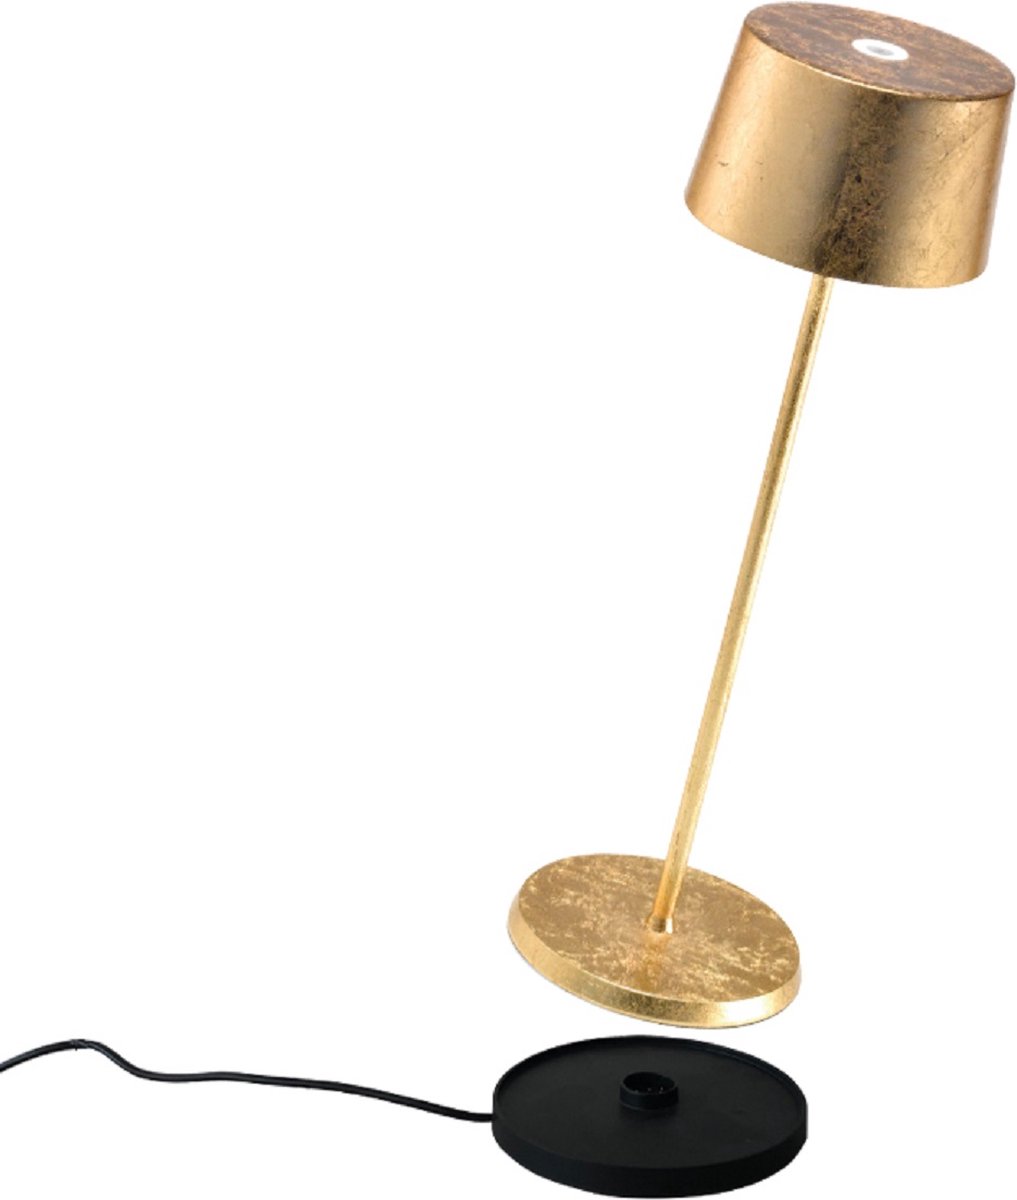 Zafferano - Olivia - Goud - H35.5cm - Ledlamp - Bureaulamp – Tafellamp – Snoerloos – Verplaatsbaar – Duurzaam - Voor binnen en buiten – LED - Dimbaar - 3000K - IP65 Spat Waterdicht - USB oplaadbaar